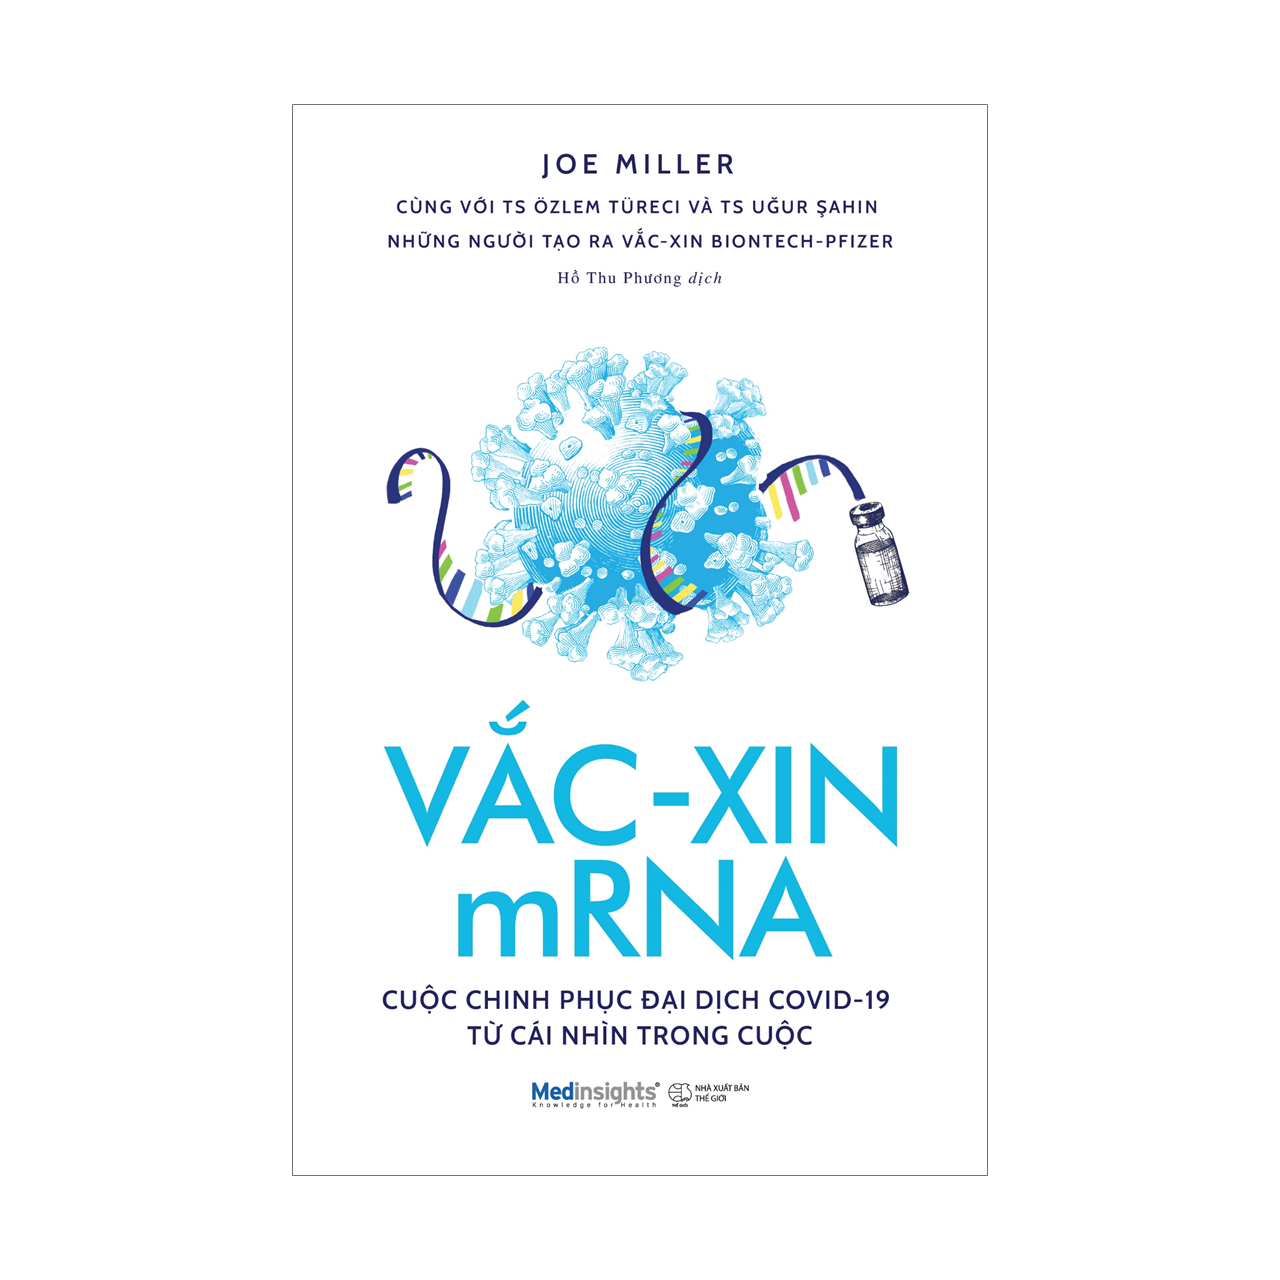 Vắc-xin mRNA: Cuộc Chinh Phục Đại Dịch Covid-19 Từ Cái Nhìn Trong Cuộc